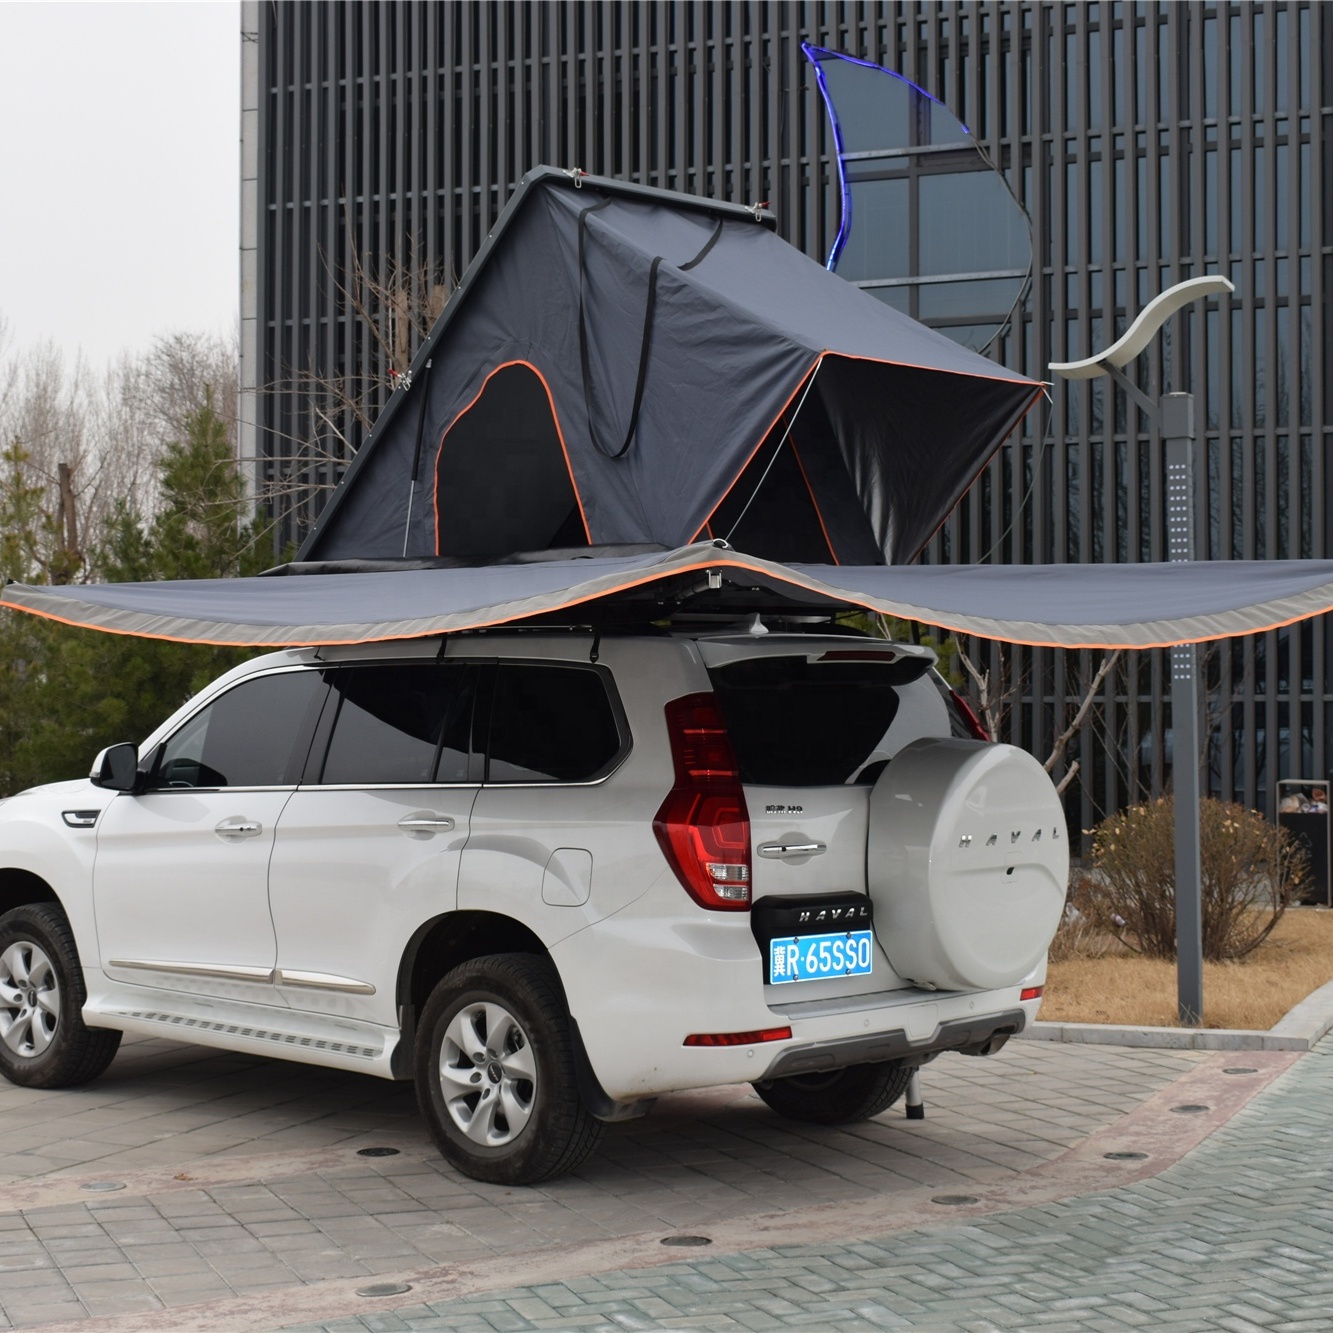 Strešni šotor, samovozeči izlet je tako udoben kot avtodom